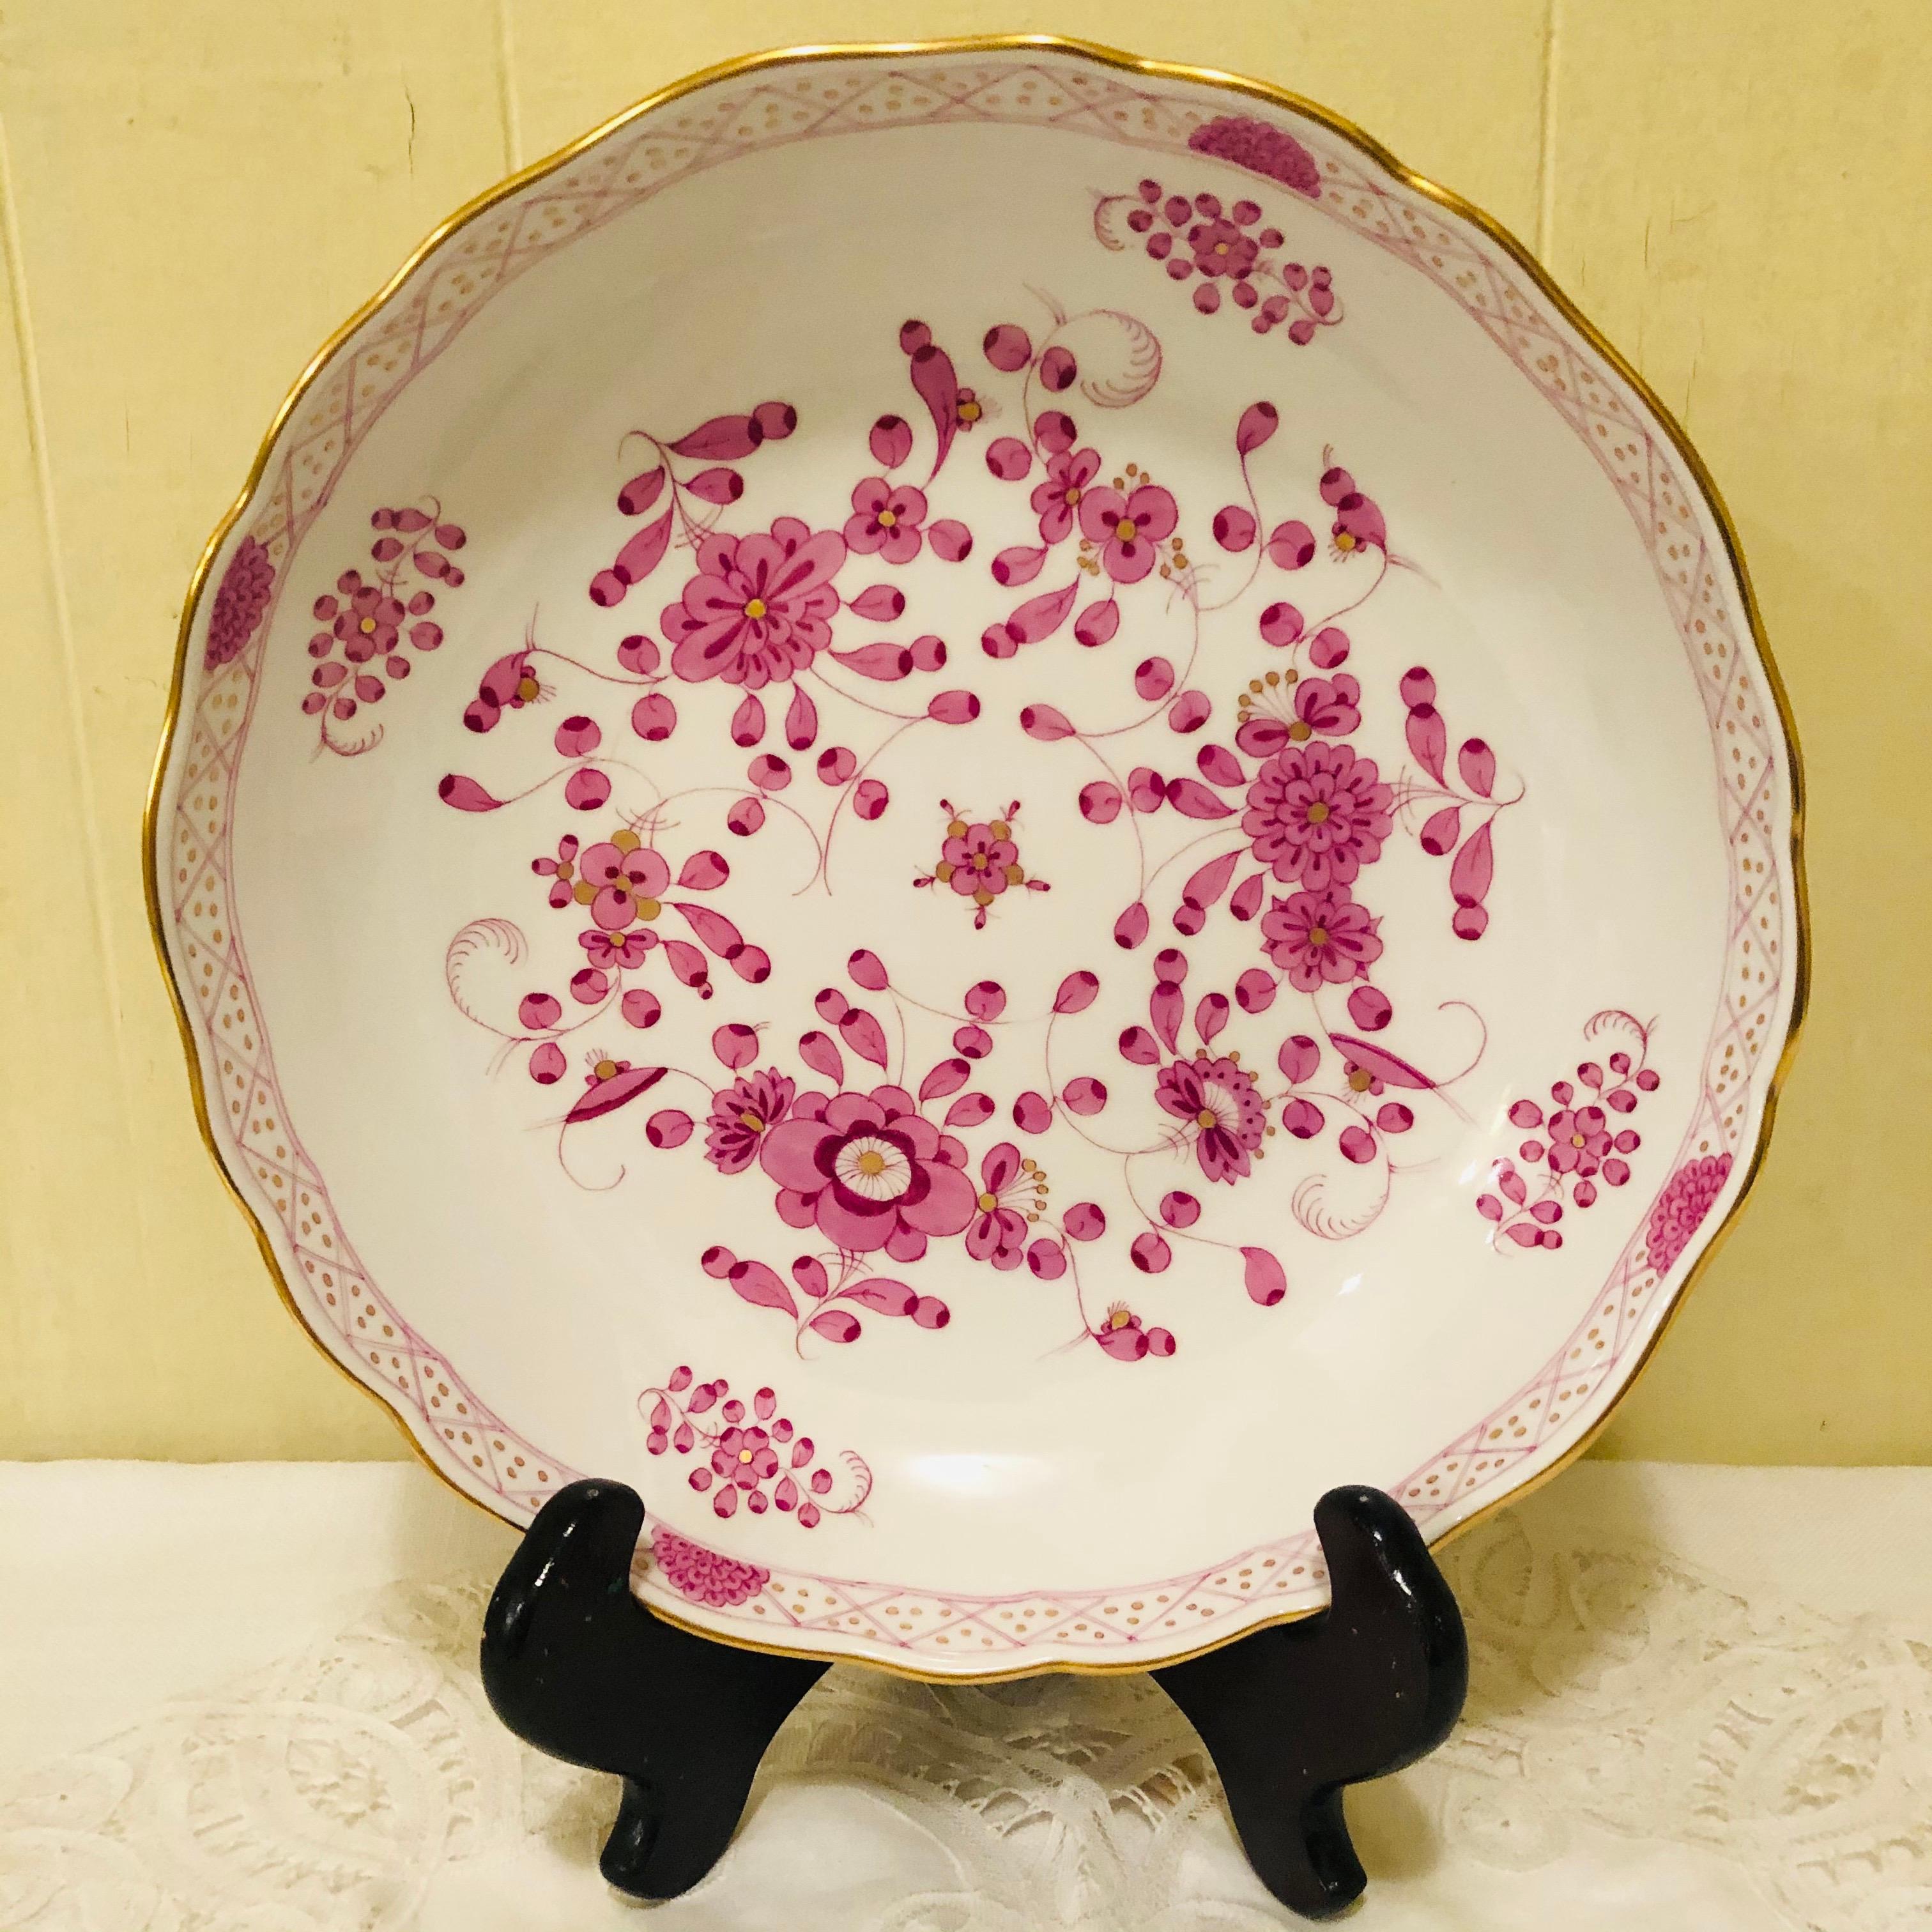 Nous vous proposons ce joli bol de service indien Meissen violet.  Il présente des peintures détaillées de fleurs roses avec quelques touches de violet et d'or sur un fond blanc. Les détails de la peinture de ce bol de service sont magnifiques. Il